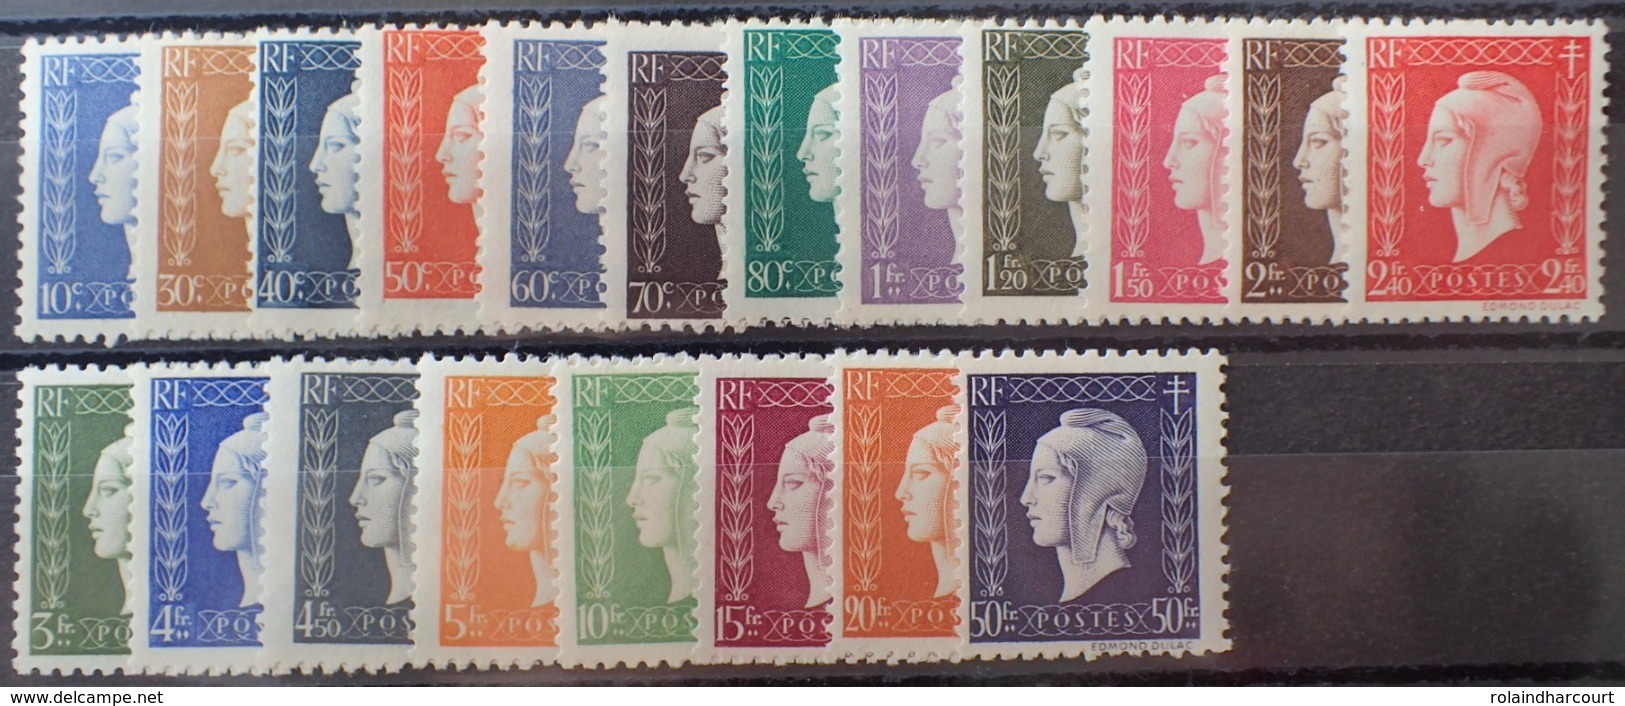 VL3804/123 - 1945 - SERIE DE LONDRES (COMPLETE) - N°682 à 701 NEUFS** - Unused Stamps